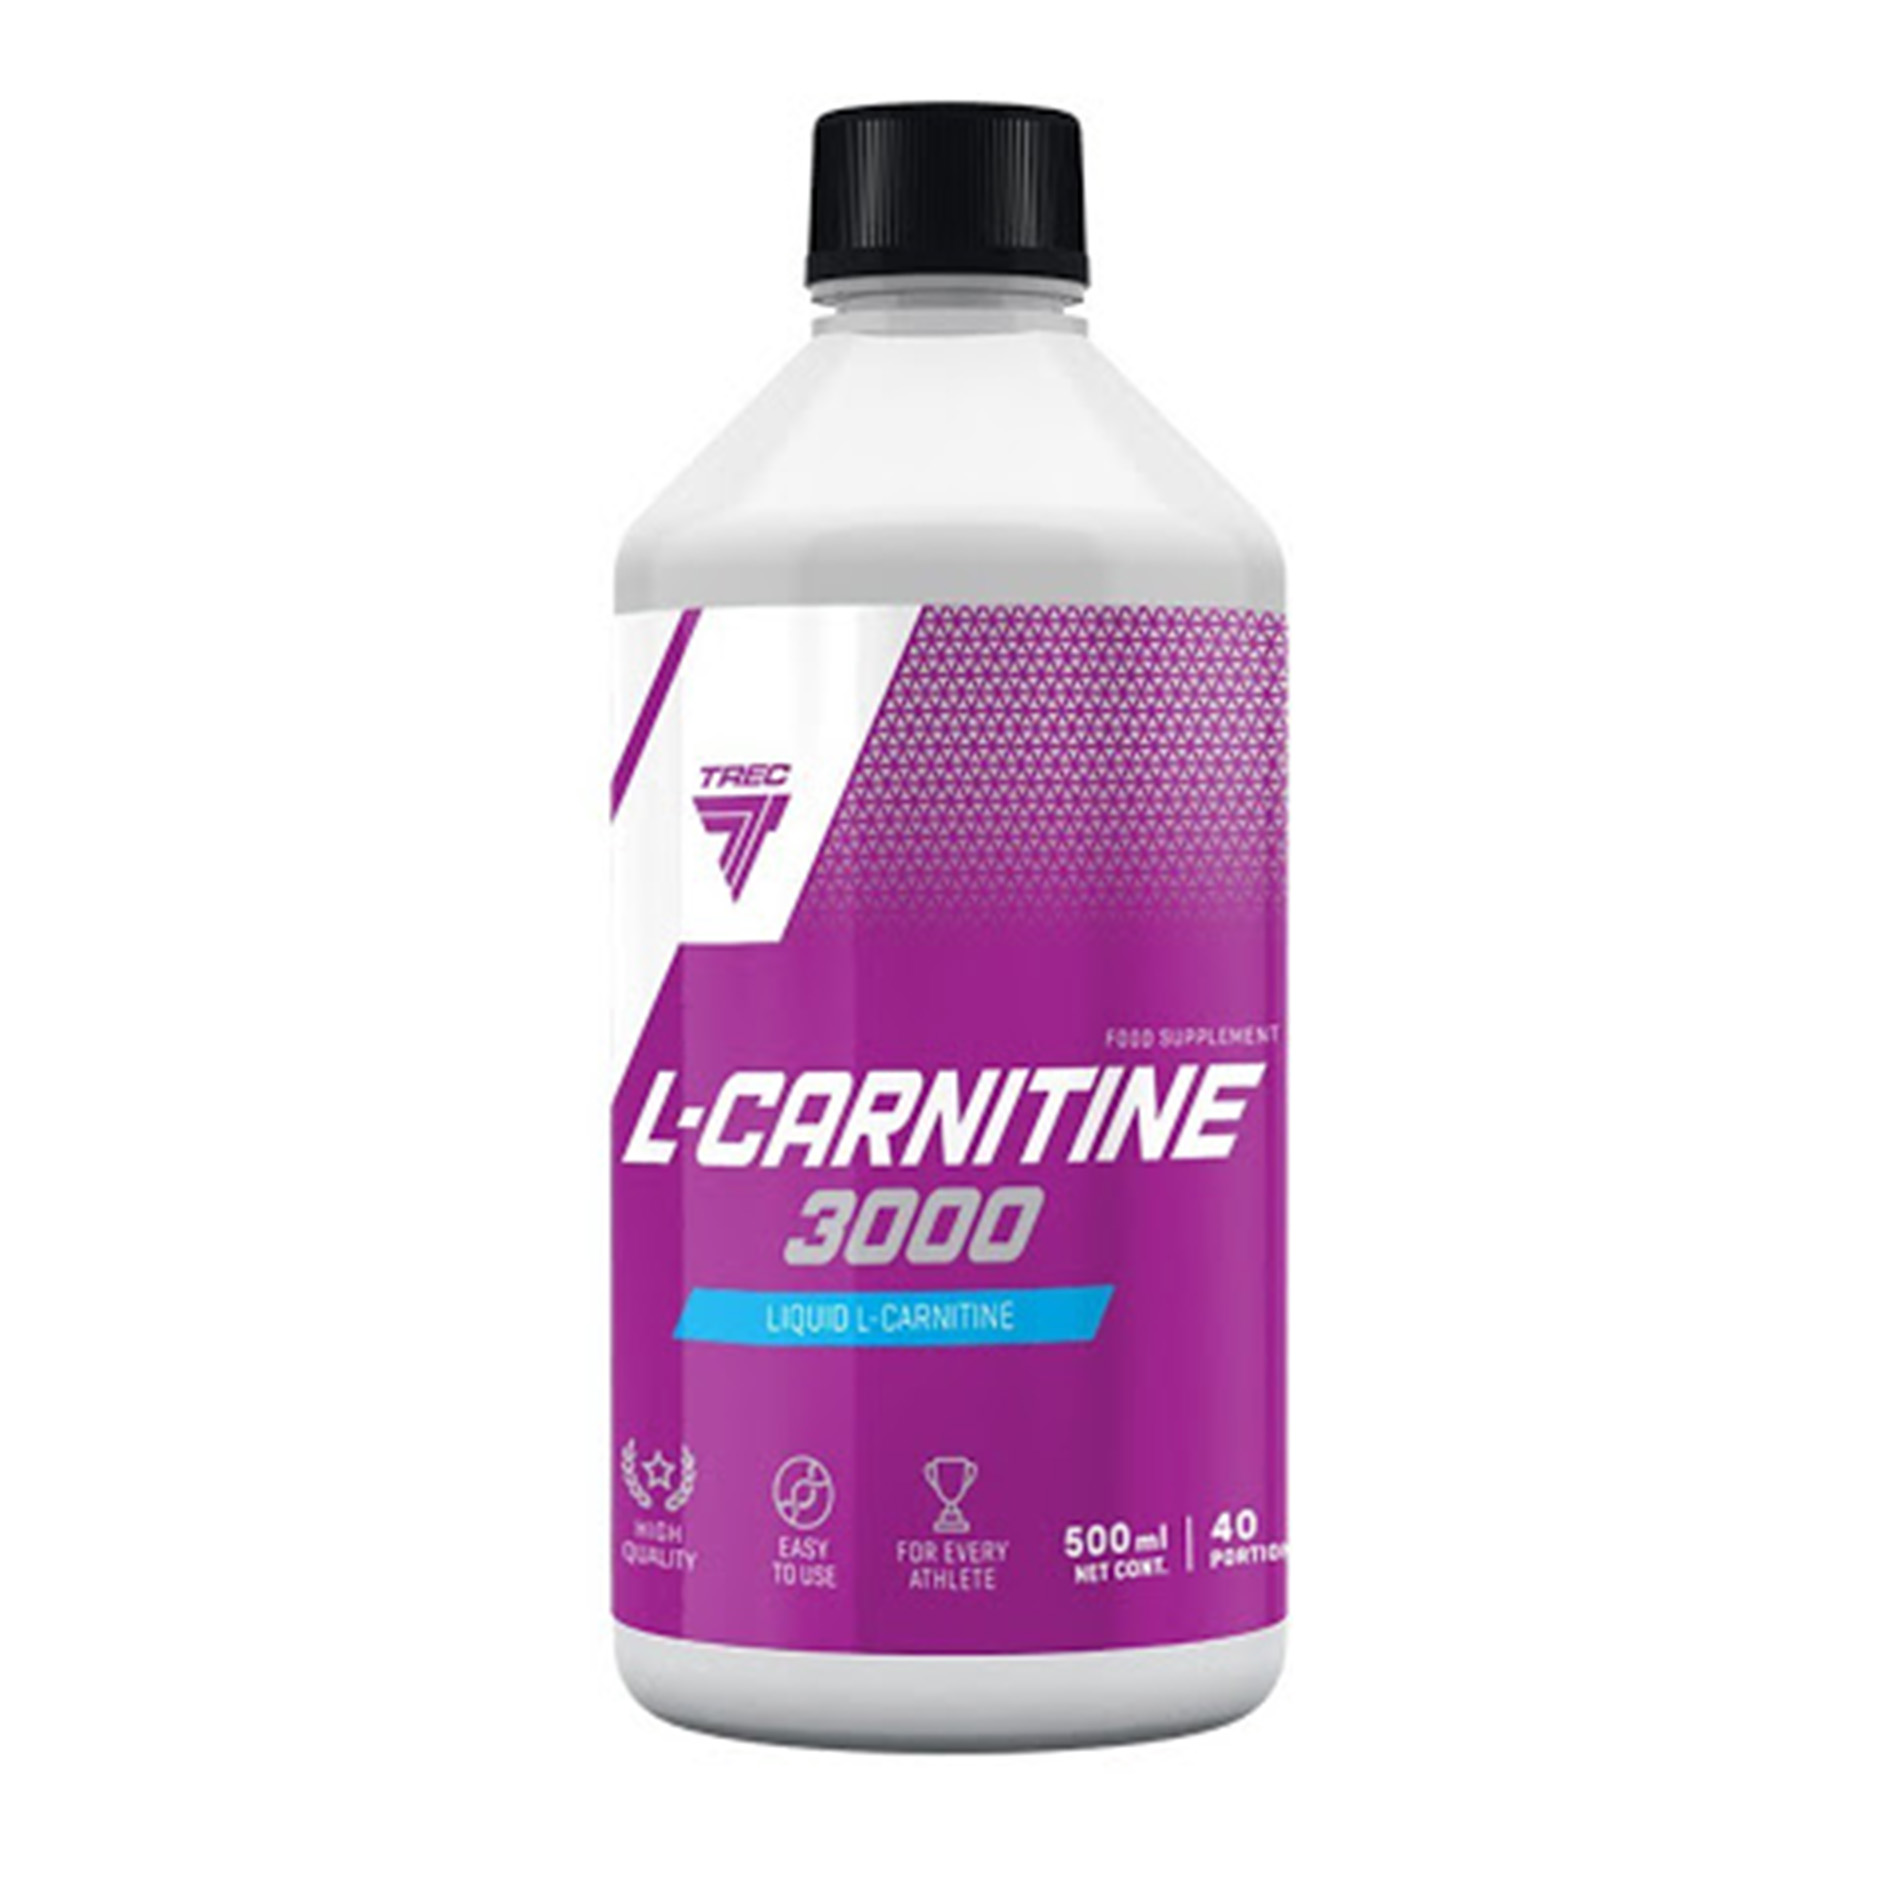 Л картин. L-Carnitine 3000 1000 мл. Trec Nutrition l-карнитин 3000. L-Carnitine 3000 trec Nutrition. Liquid l-Carnitine 3000.